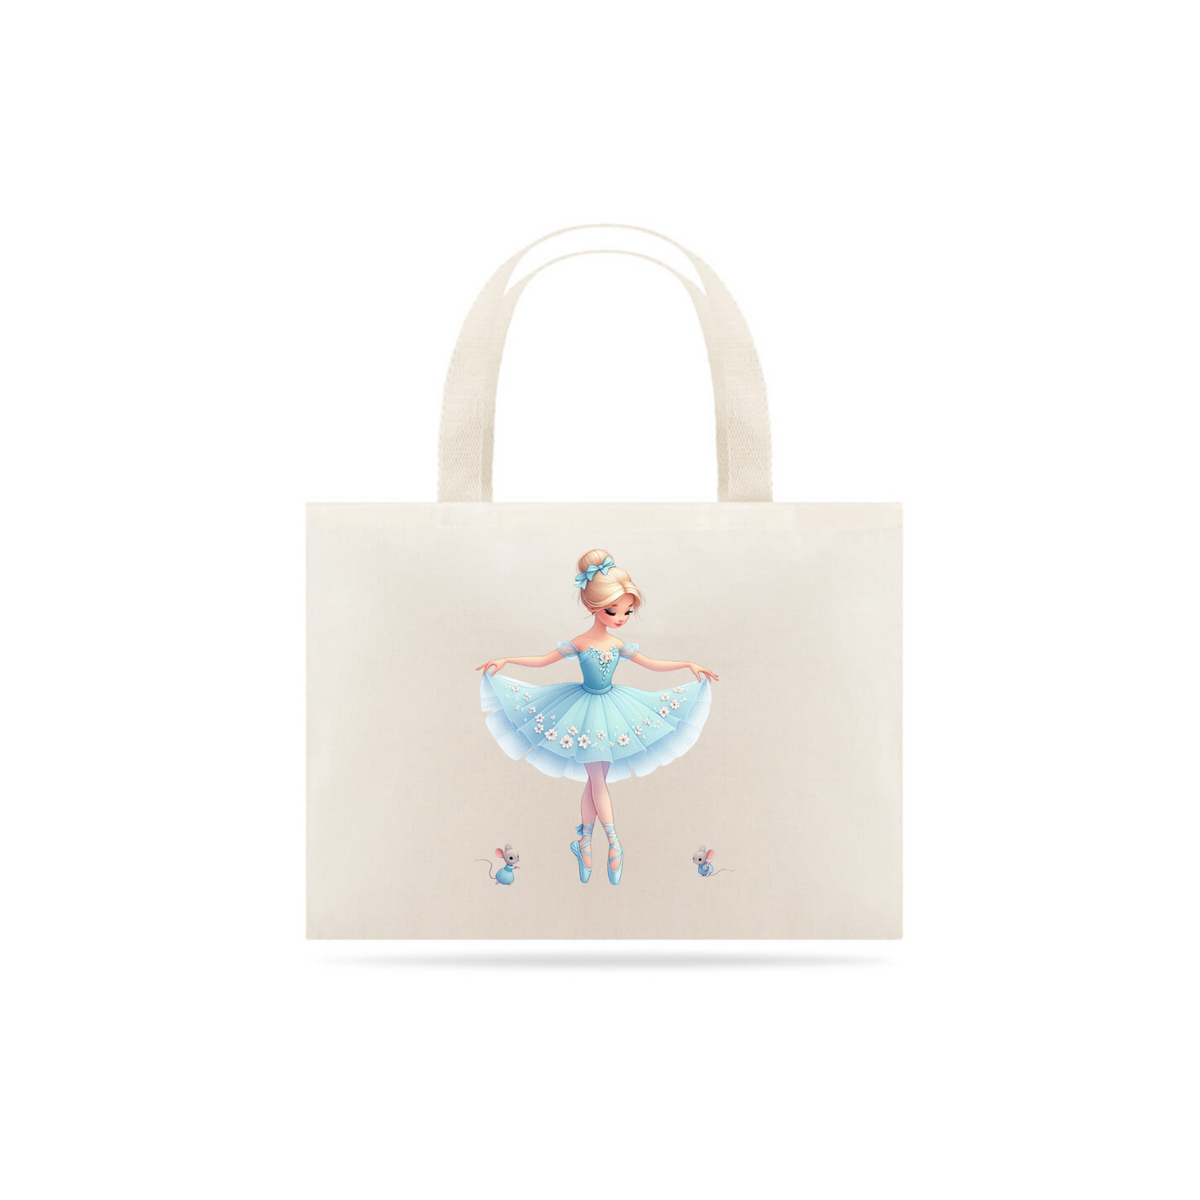 Nome do produto: Eco bag  - Princesa do sapatinho 2